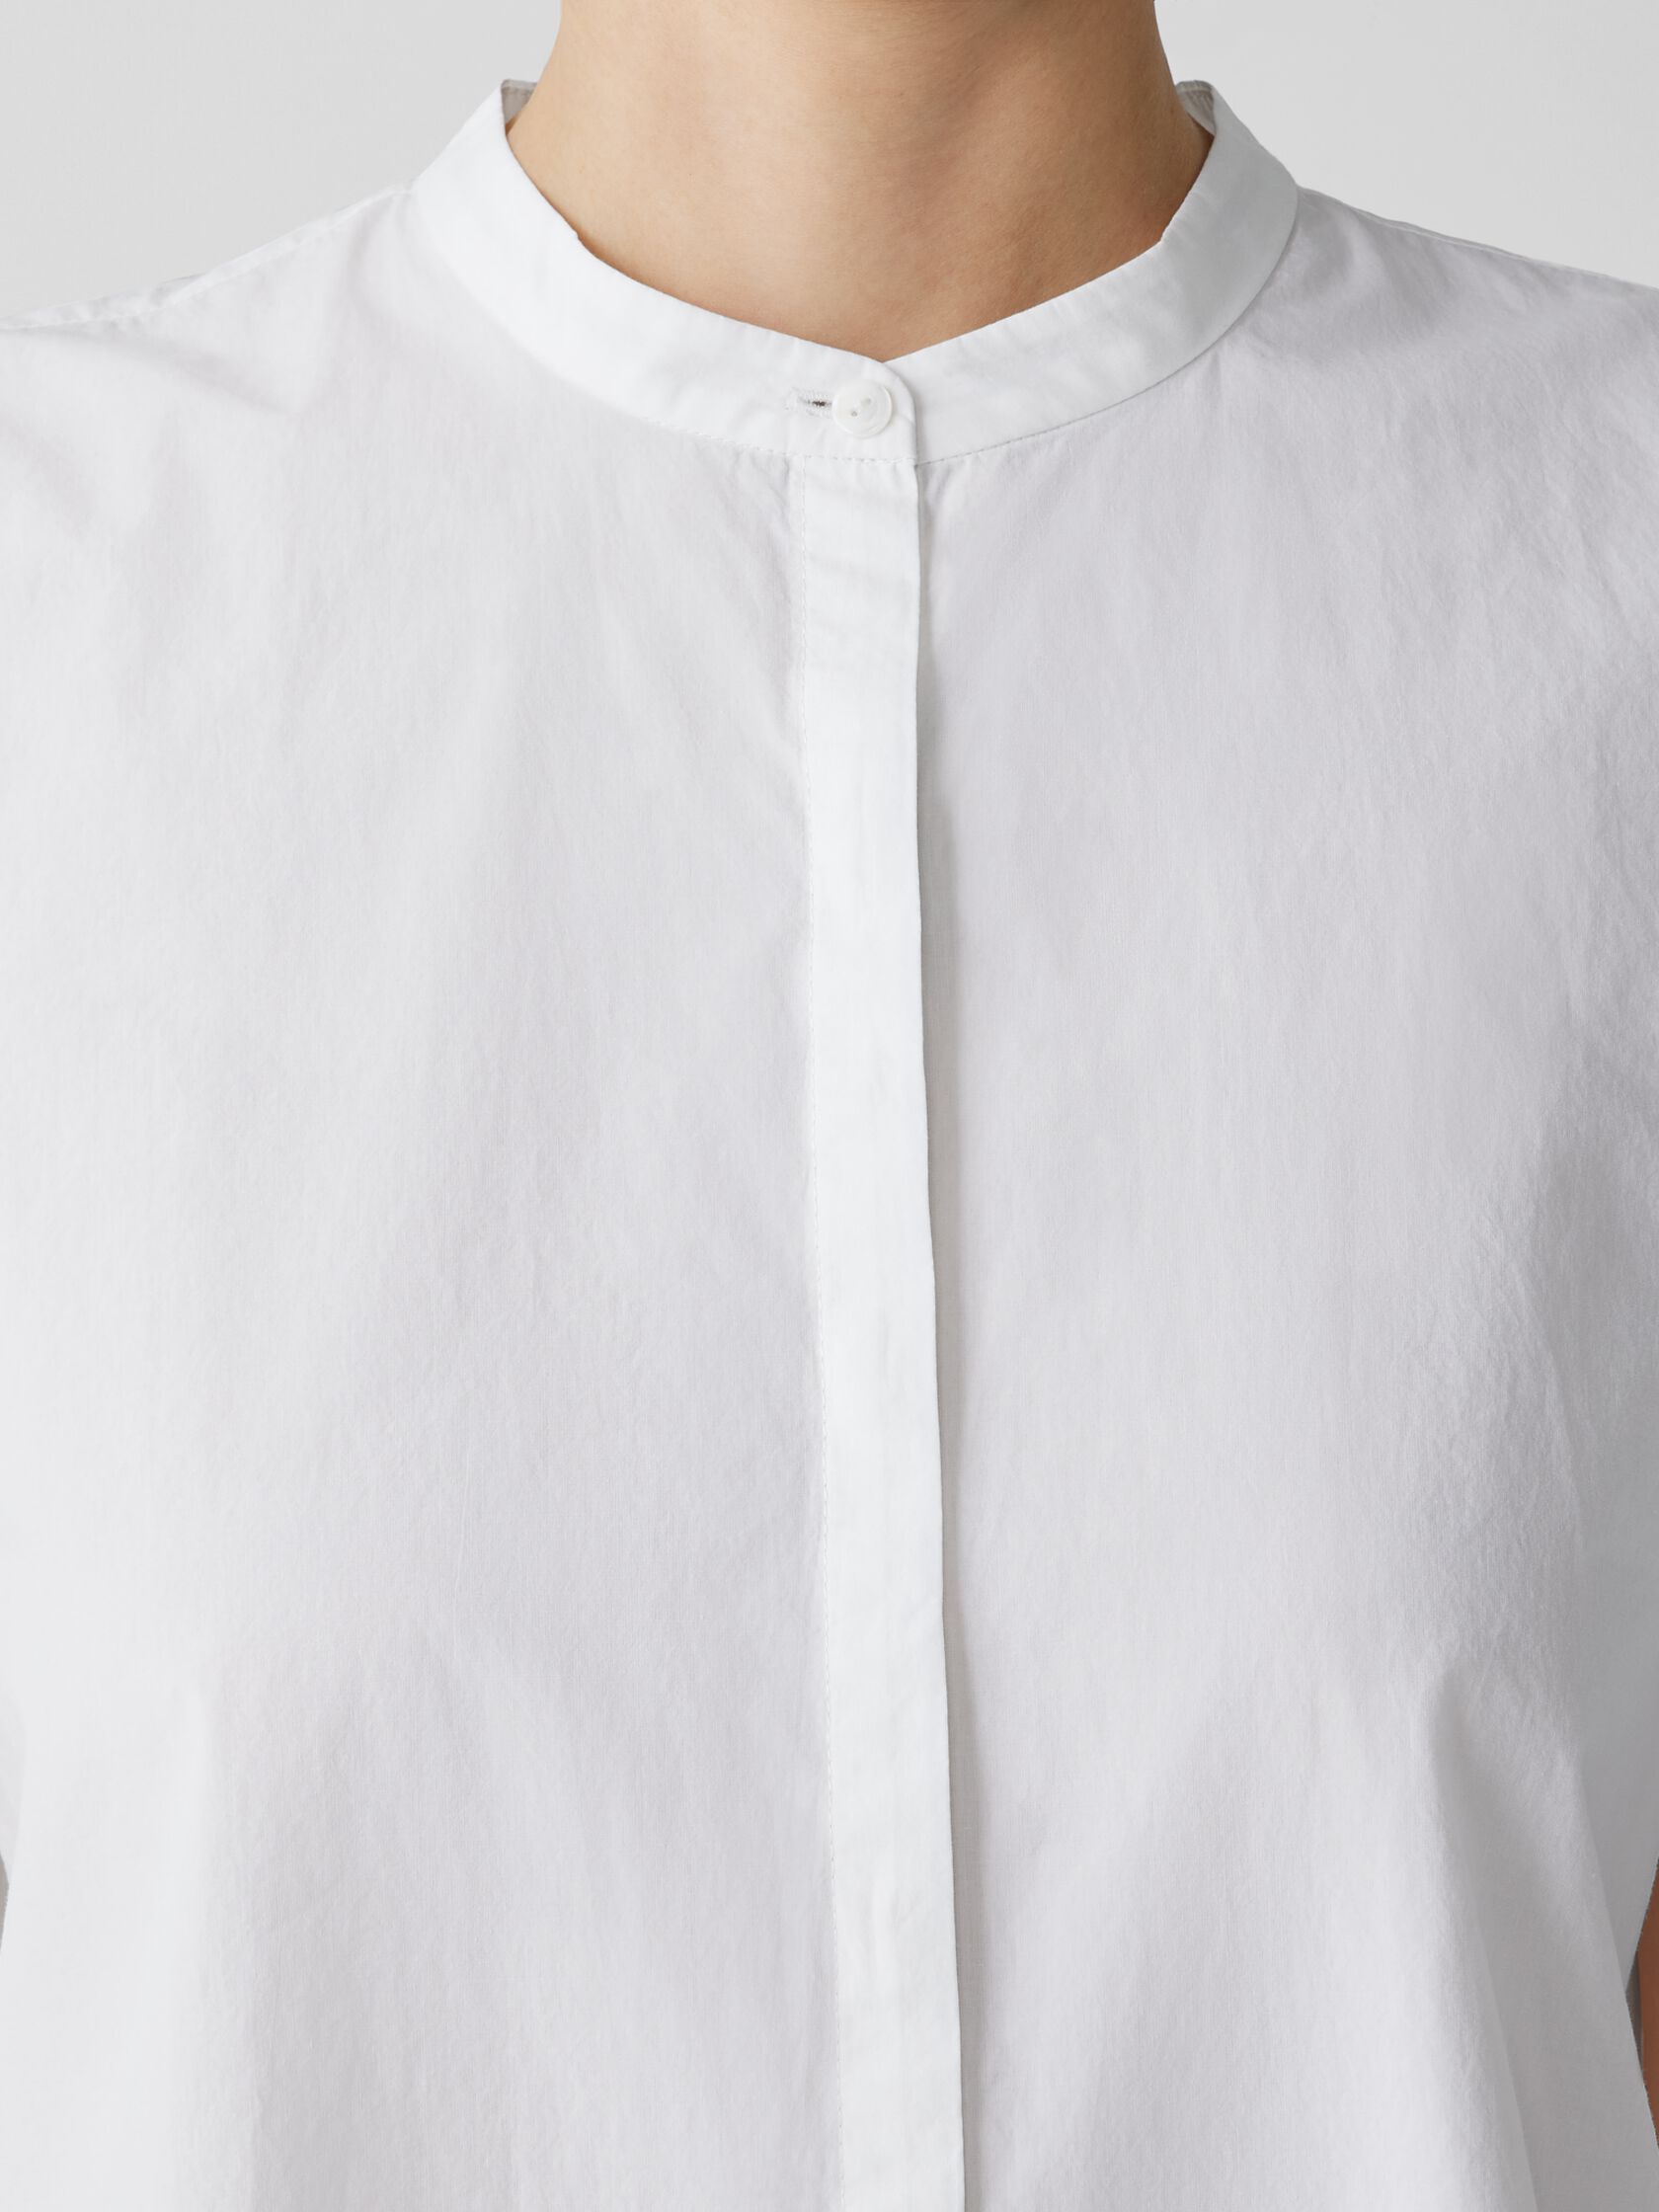 Washed Organic Cotton Poplin Band Collar Shirt